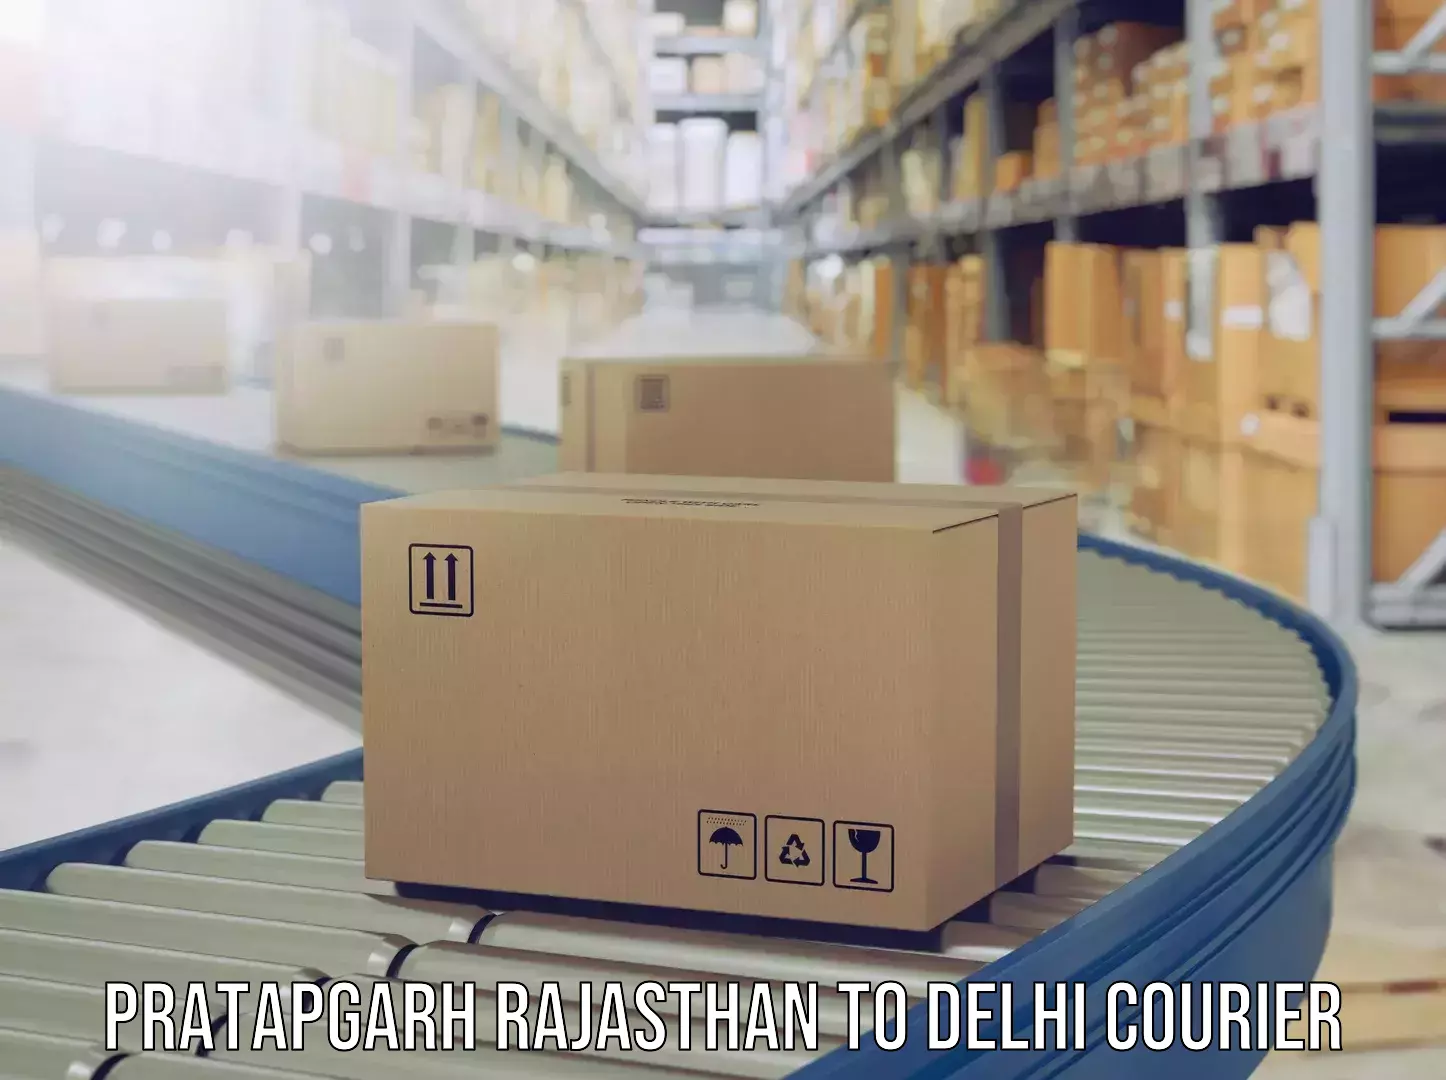 Luggage delivery solutions Pratapgarh Rajasthan to Jamia Millia Islamia New Delhi